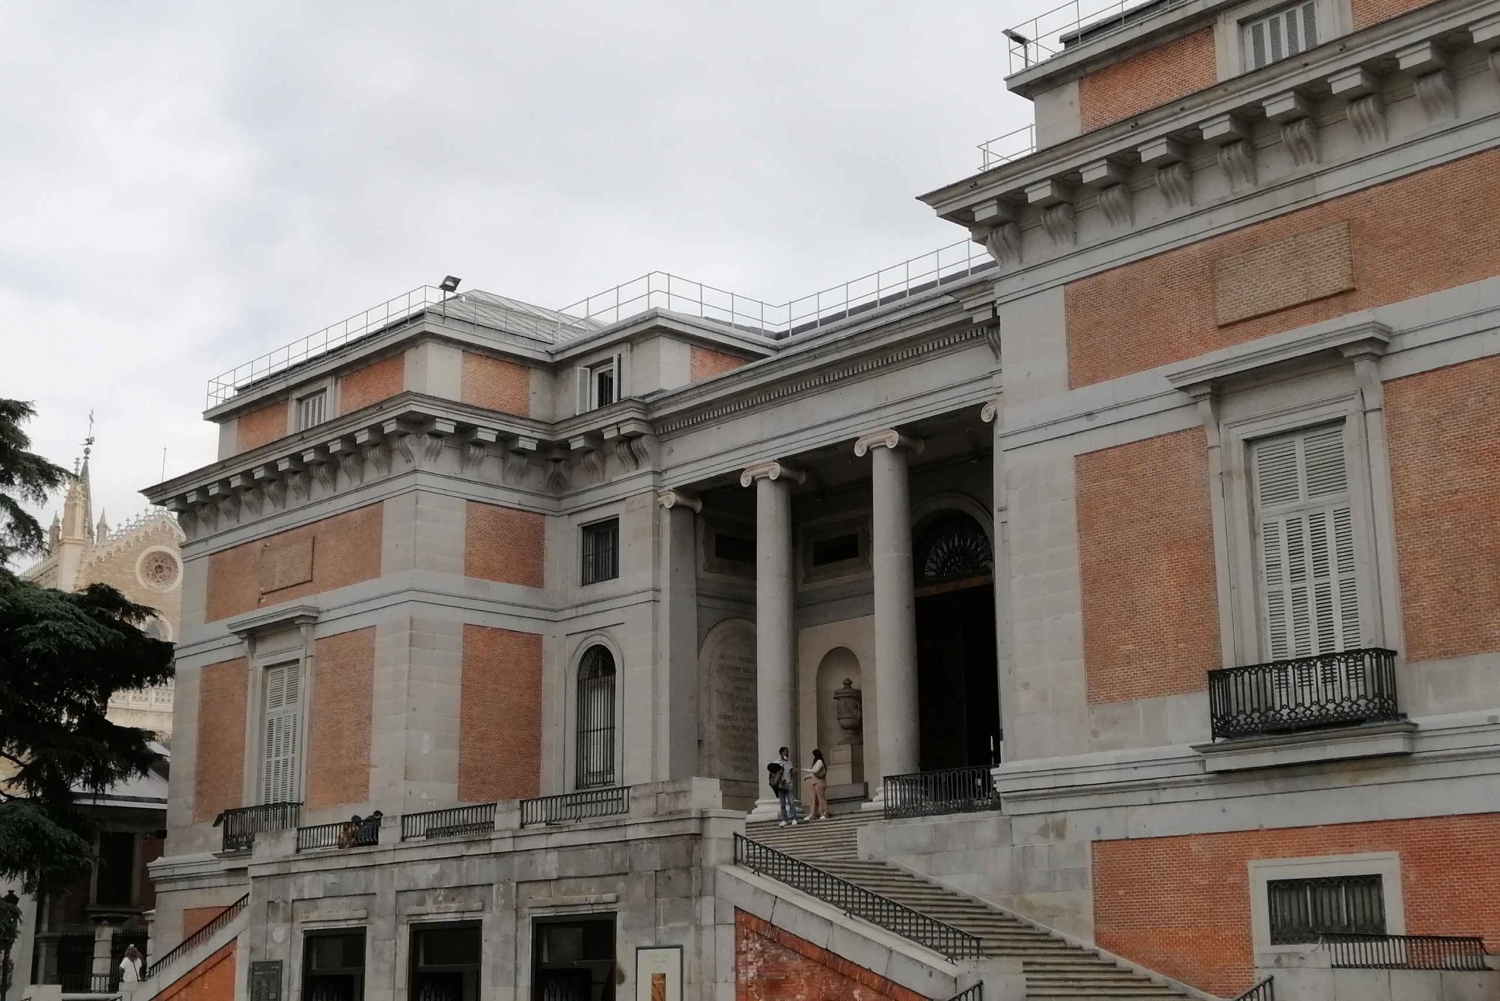 Madrid: Retiro Park Walking Tour with Prado Museum Ticket